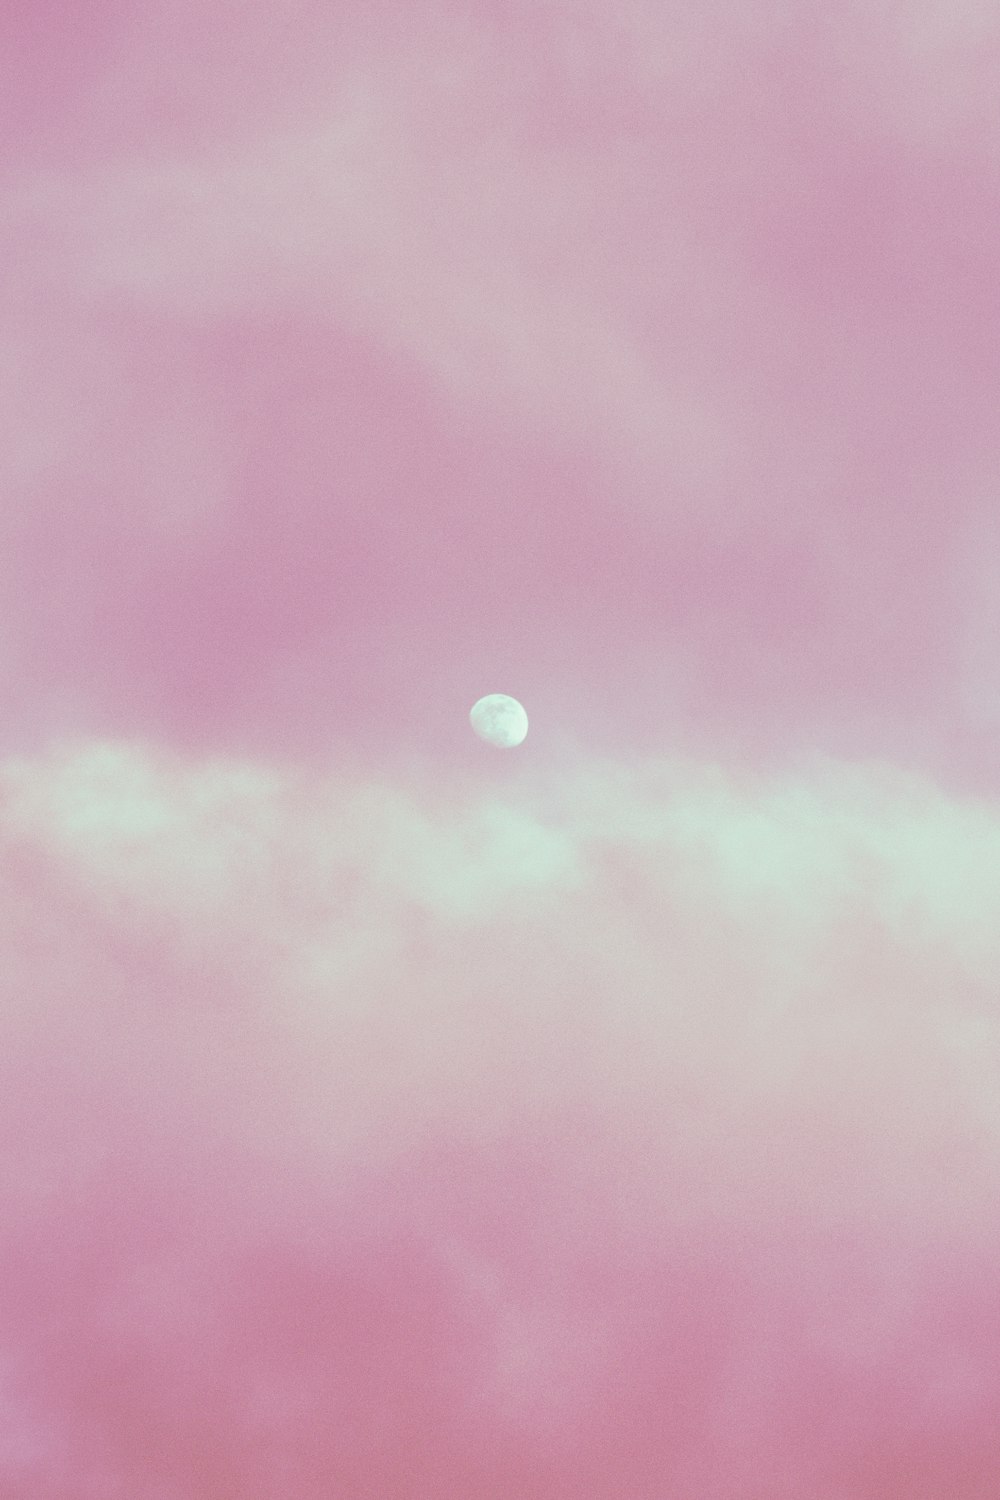 ciel rose et bleu avec lune